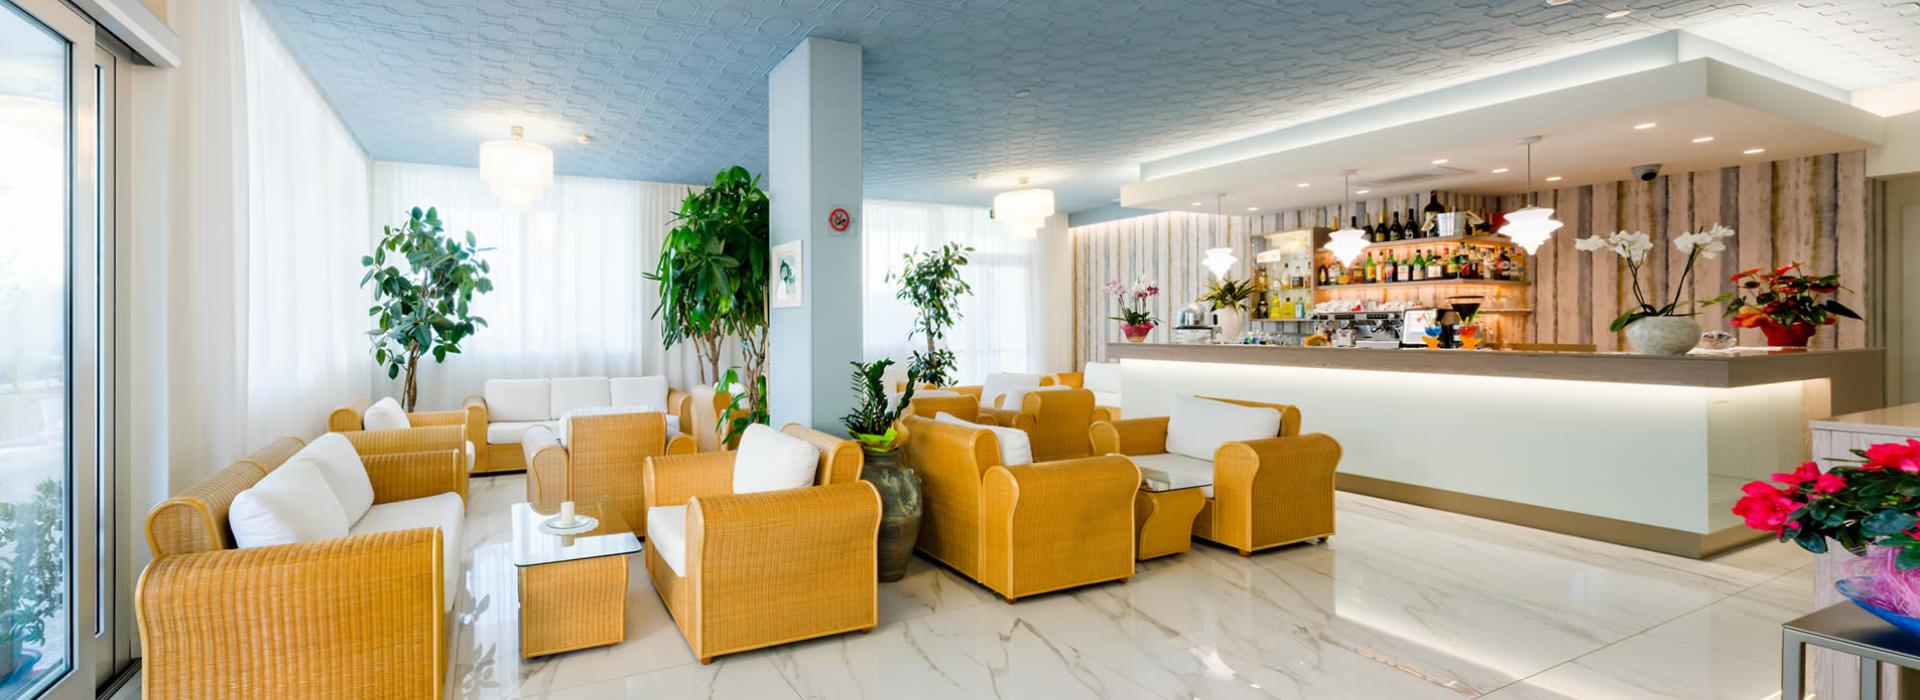 hotelvictoria en bibione-express-2021-service 014